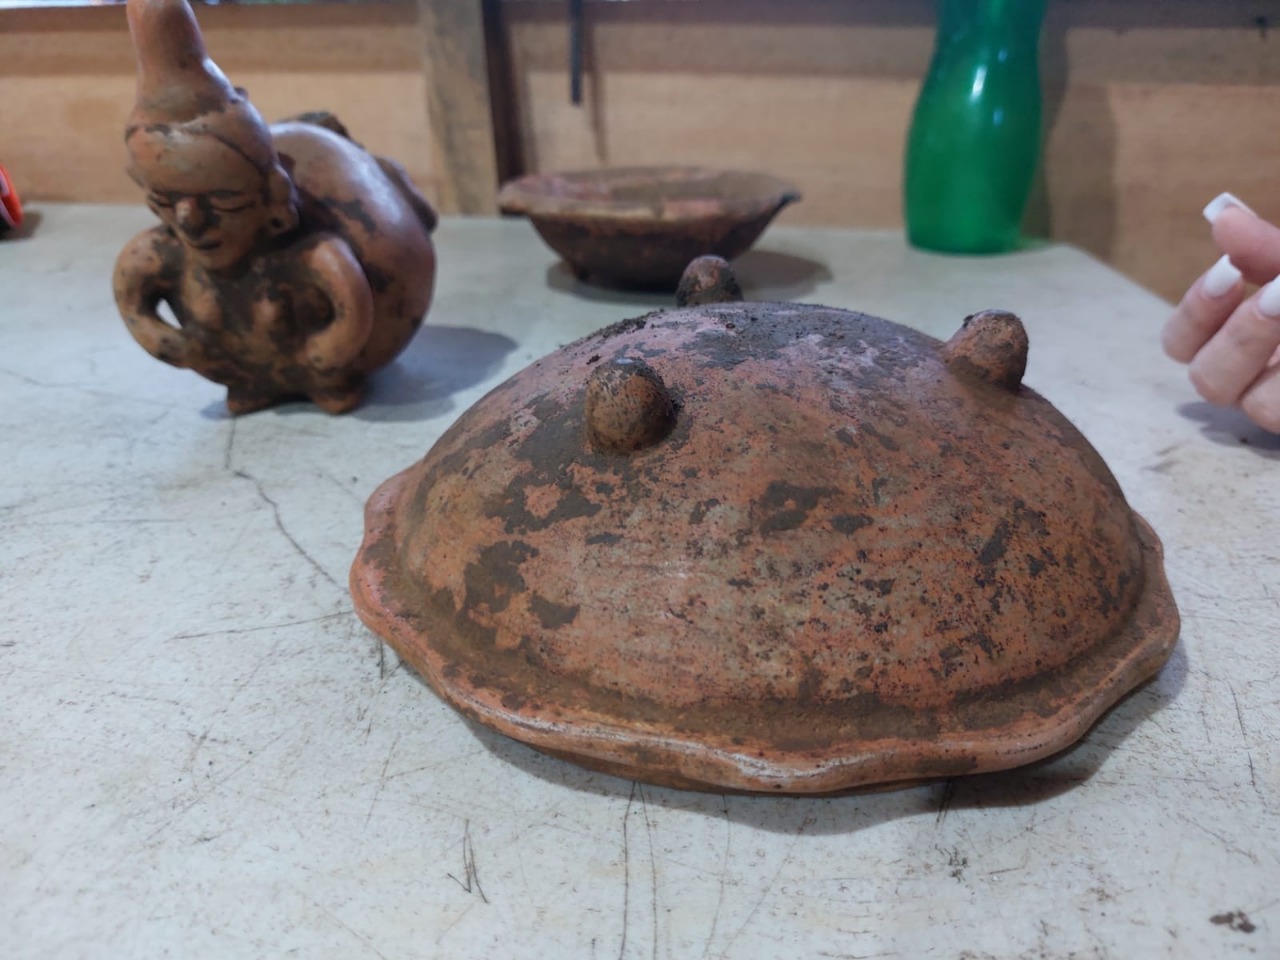 Hallan valiosas piezas arqueológicas en León Managua. Radio La Primerísima